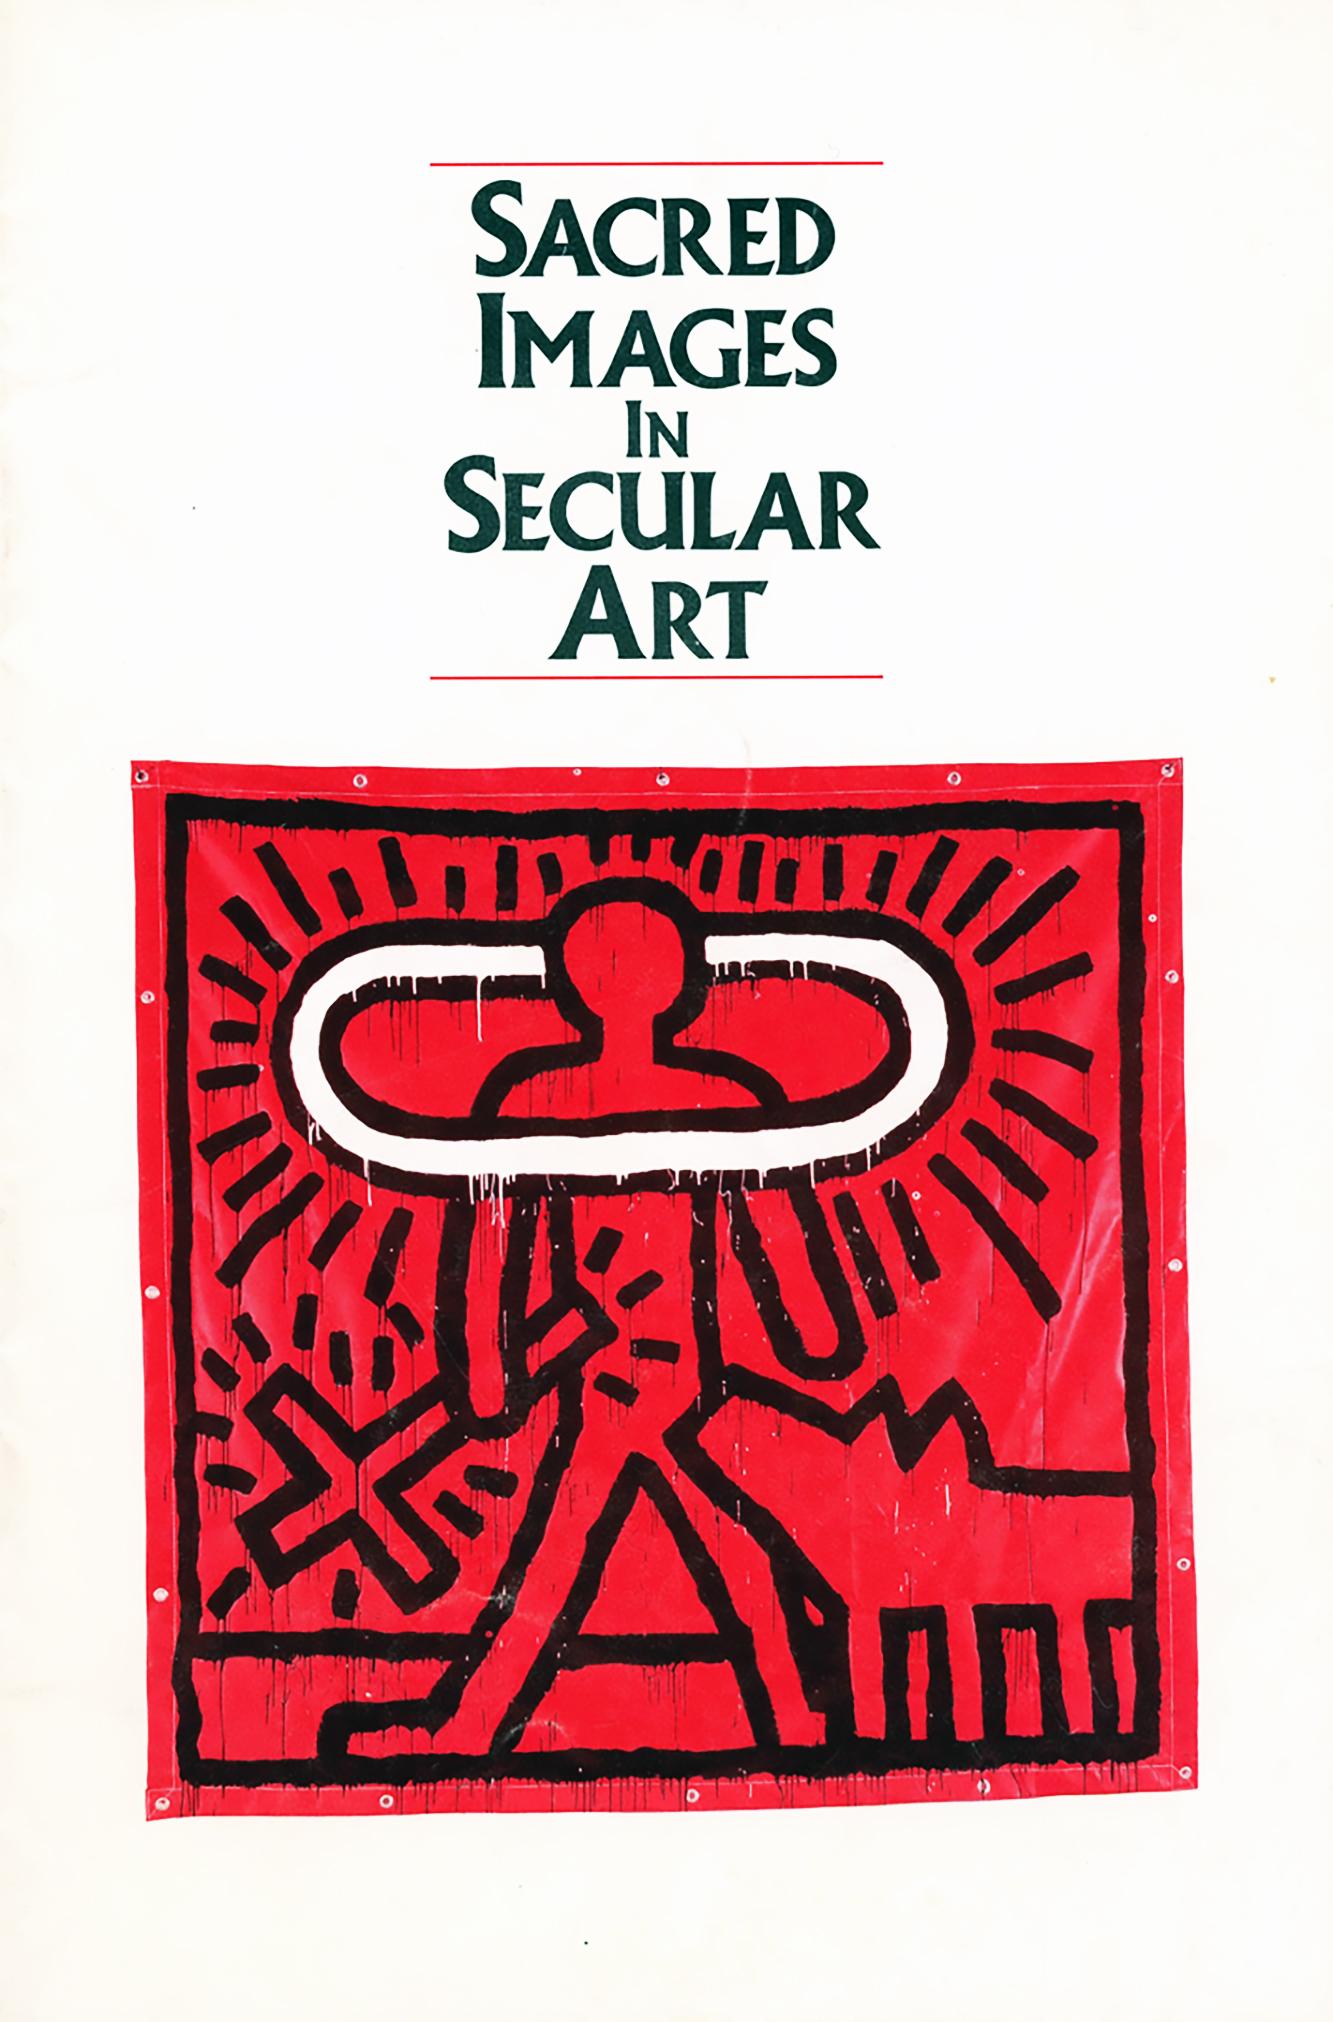 Keith Haring Images sacrées dans l'art secrète ( Catalogue du musée Whitney 1986) - Print de (after) Keith Haring